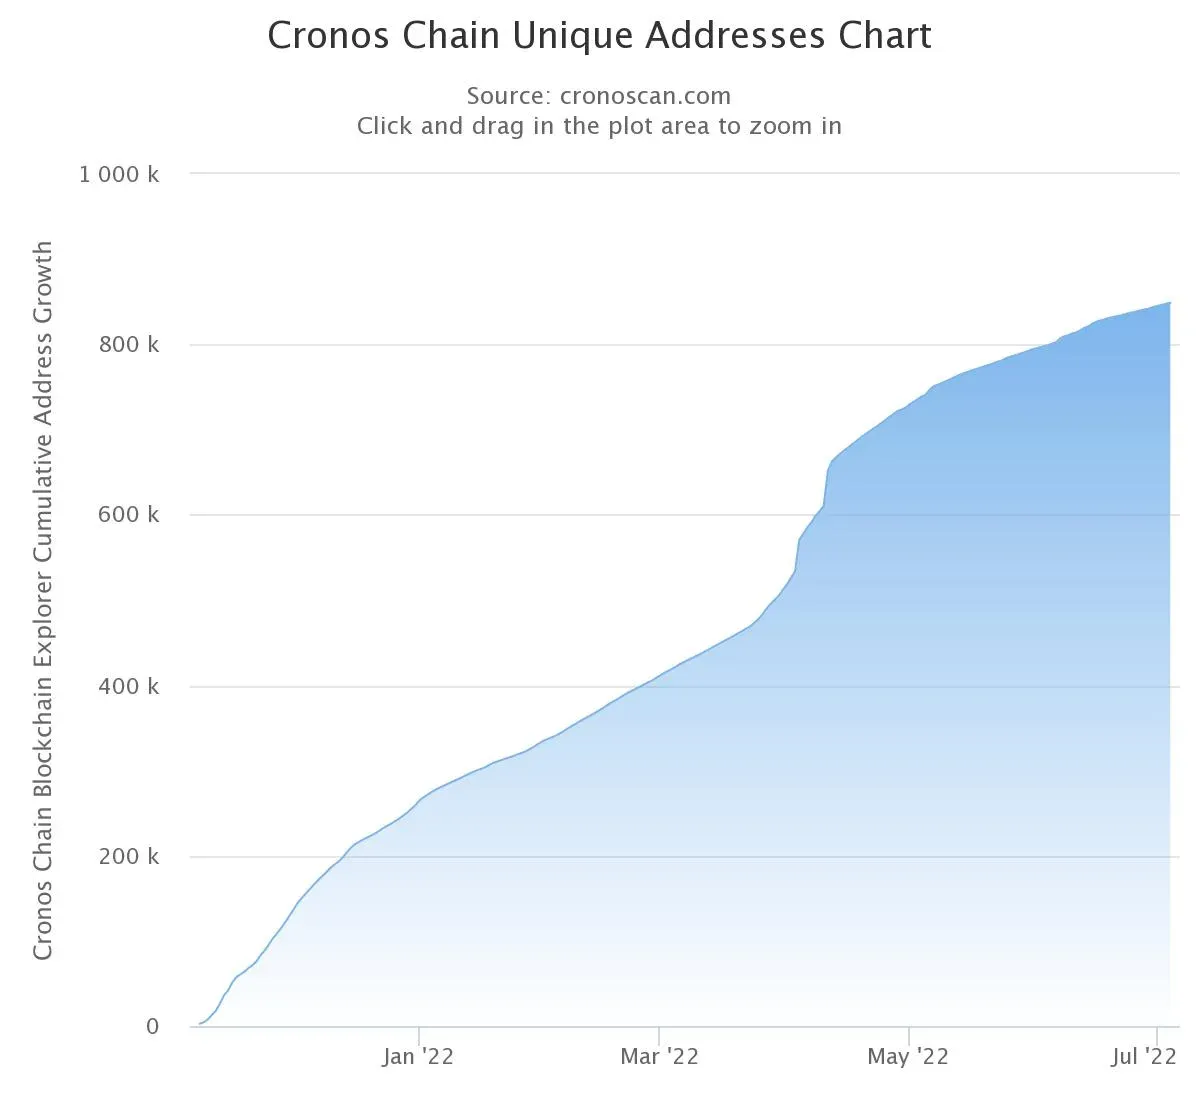 Grafik zum Adressenwachstum auf der Cronos Chain